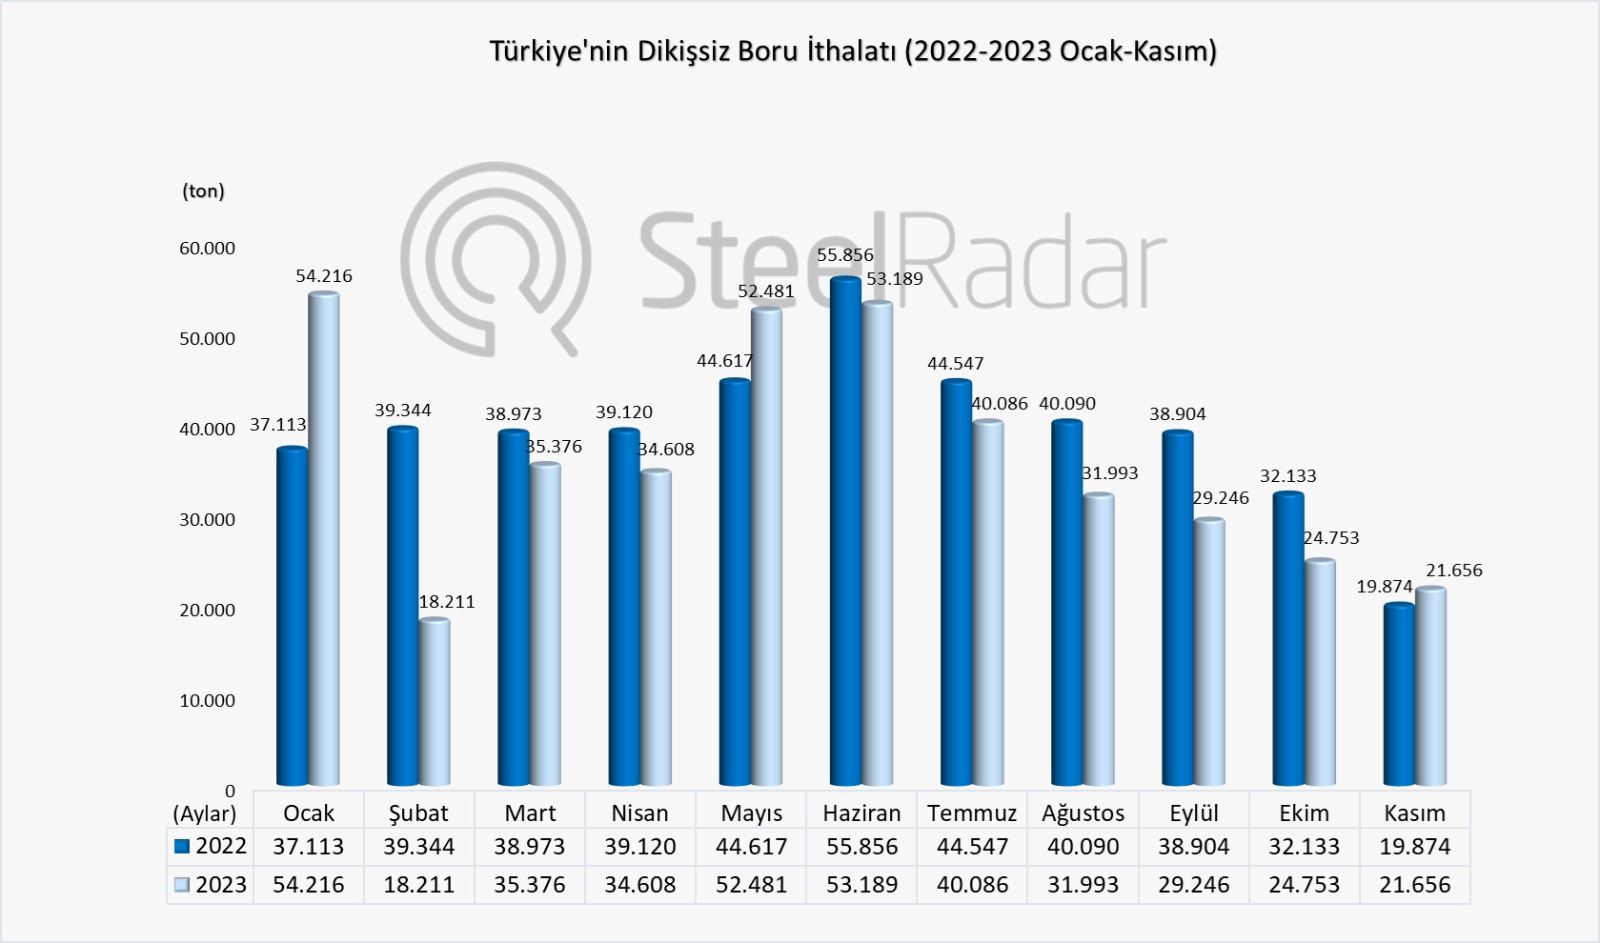 Türkiye’nin dikişsiz boru ithalatı ocak-kasım döneminde % 8,07 azaldı